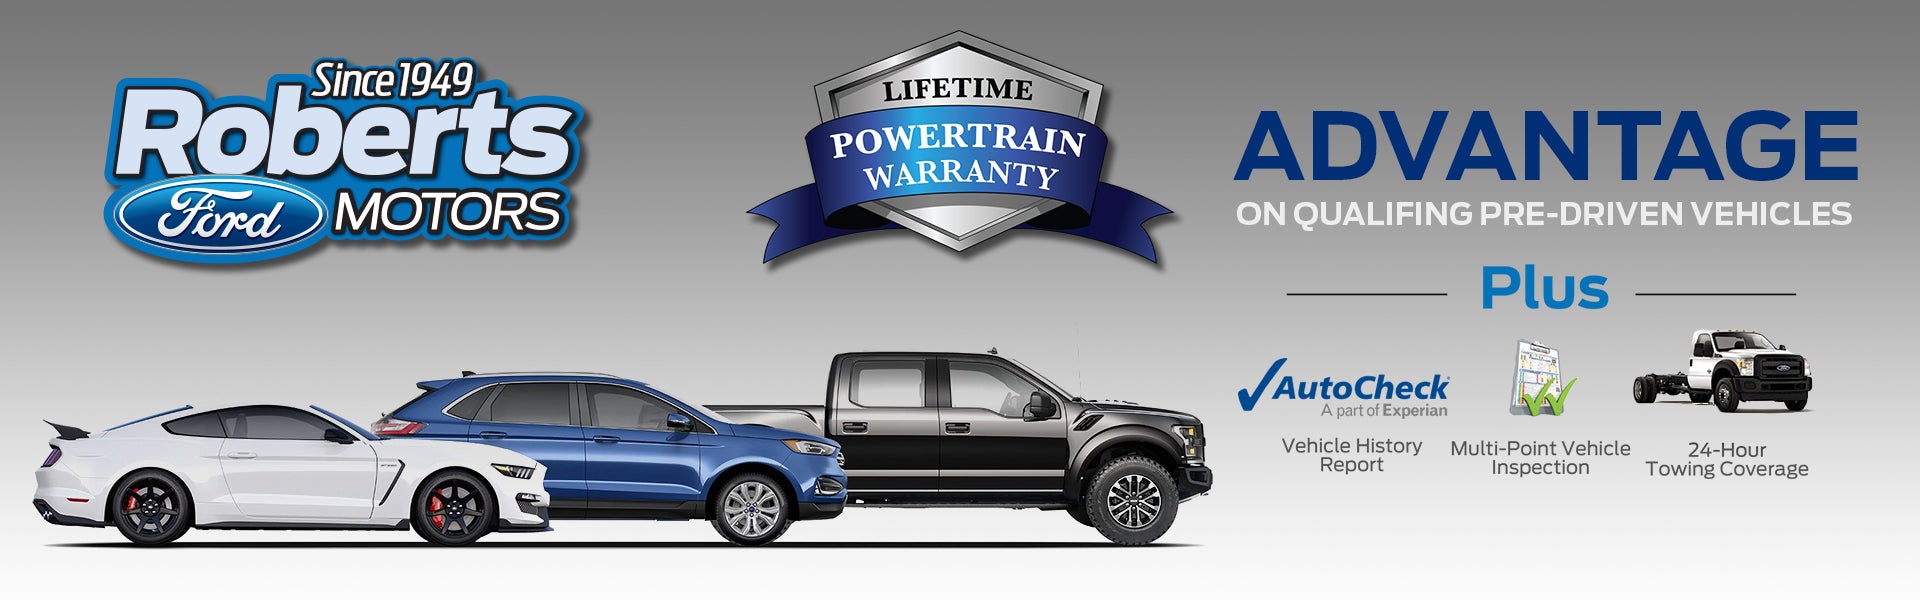 Roberts Motors Ford Lifetime Powertrain Warranty